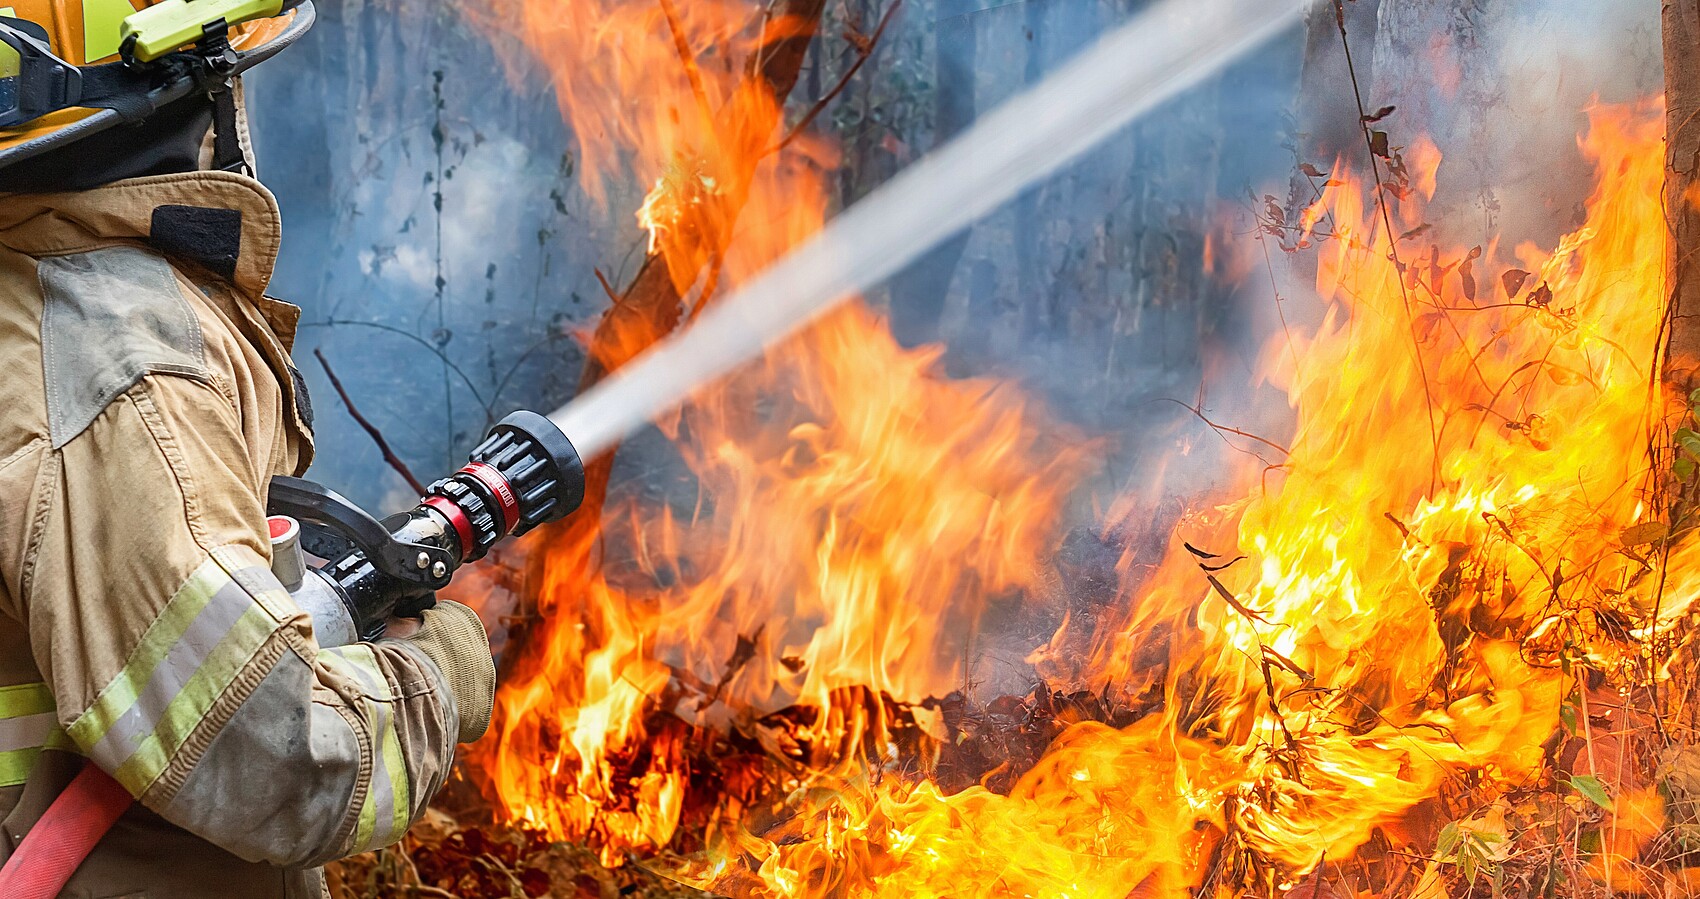 Feuerwehrmann hält Wasserstrahl auf lichterloh brennende Bäume